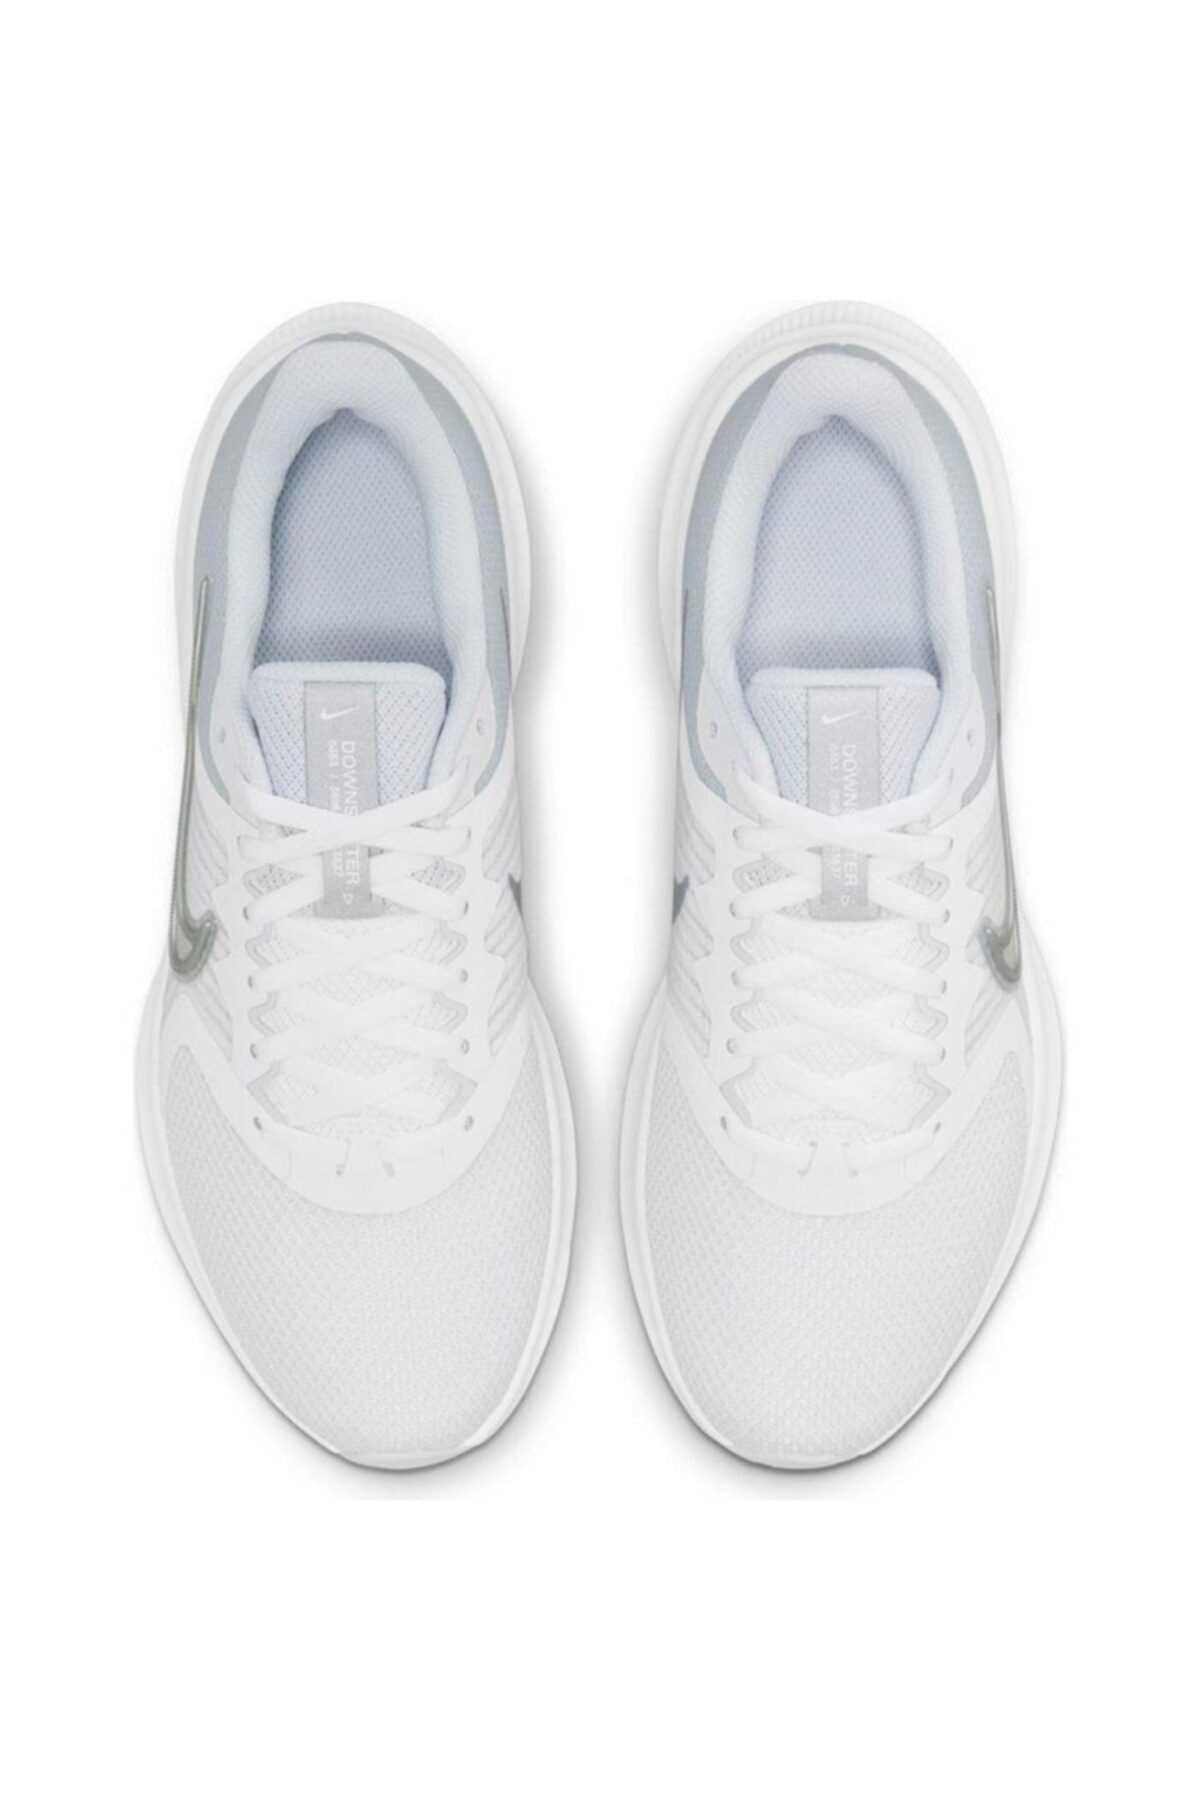 خرید کفش دویدن زنانه جدید شیک Nike اورجینال رنگ سفید ty103148264